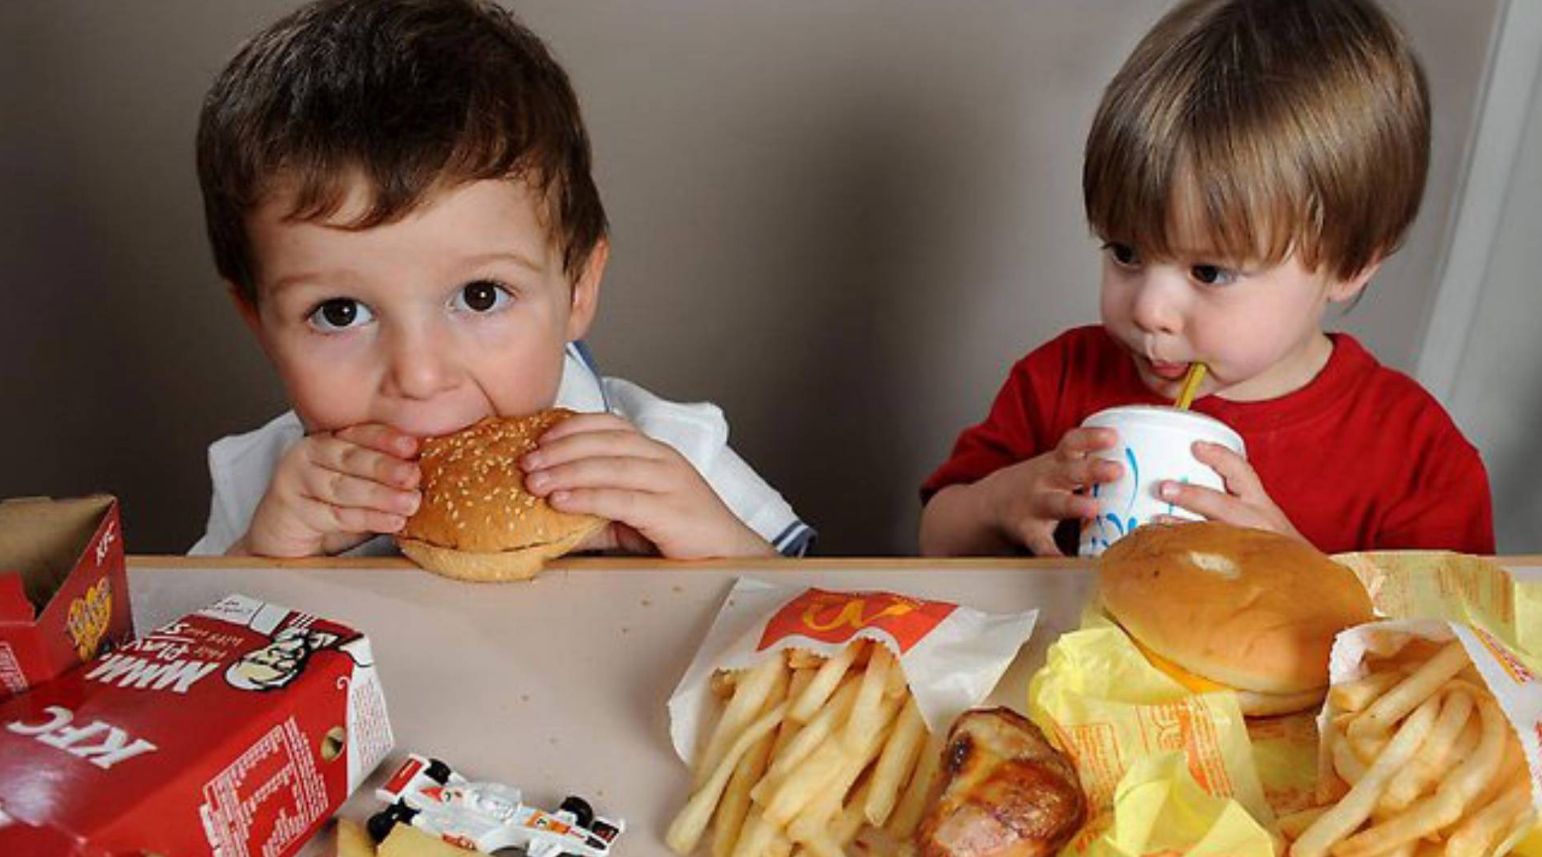 Исследование: Нездоровая пища влияет на IQ детей